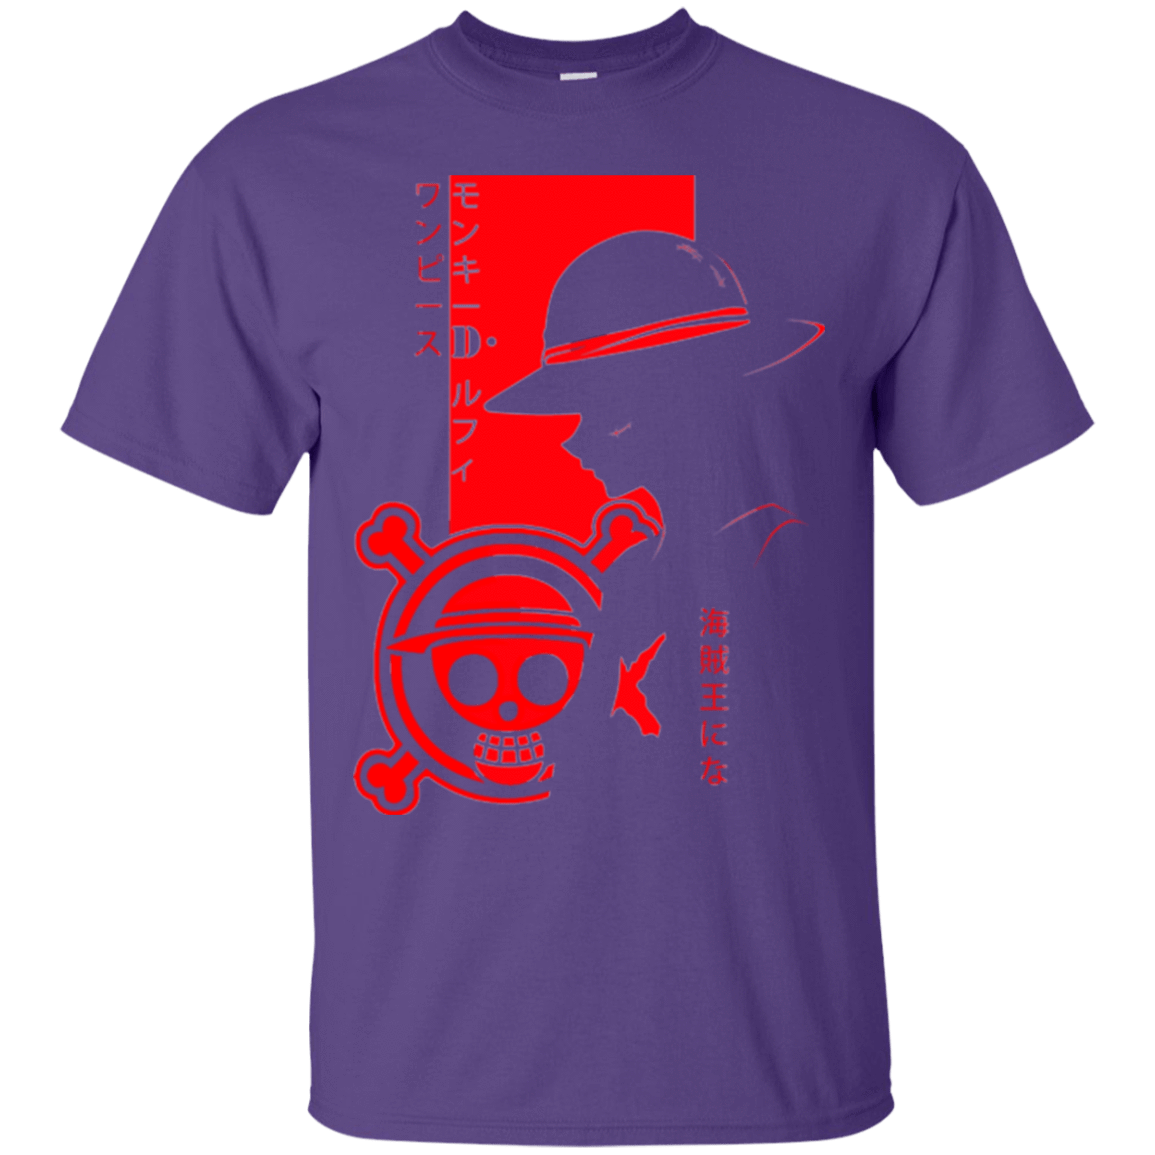 T-Shirts Purple / Small Profile - Pirate King T-Shirt